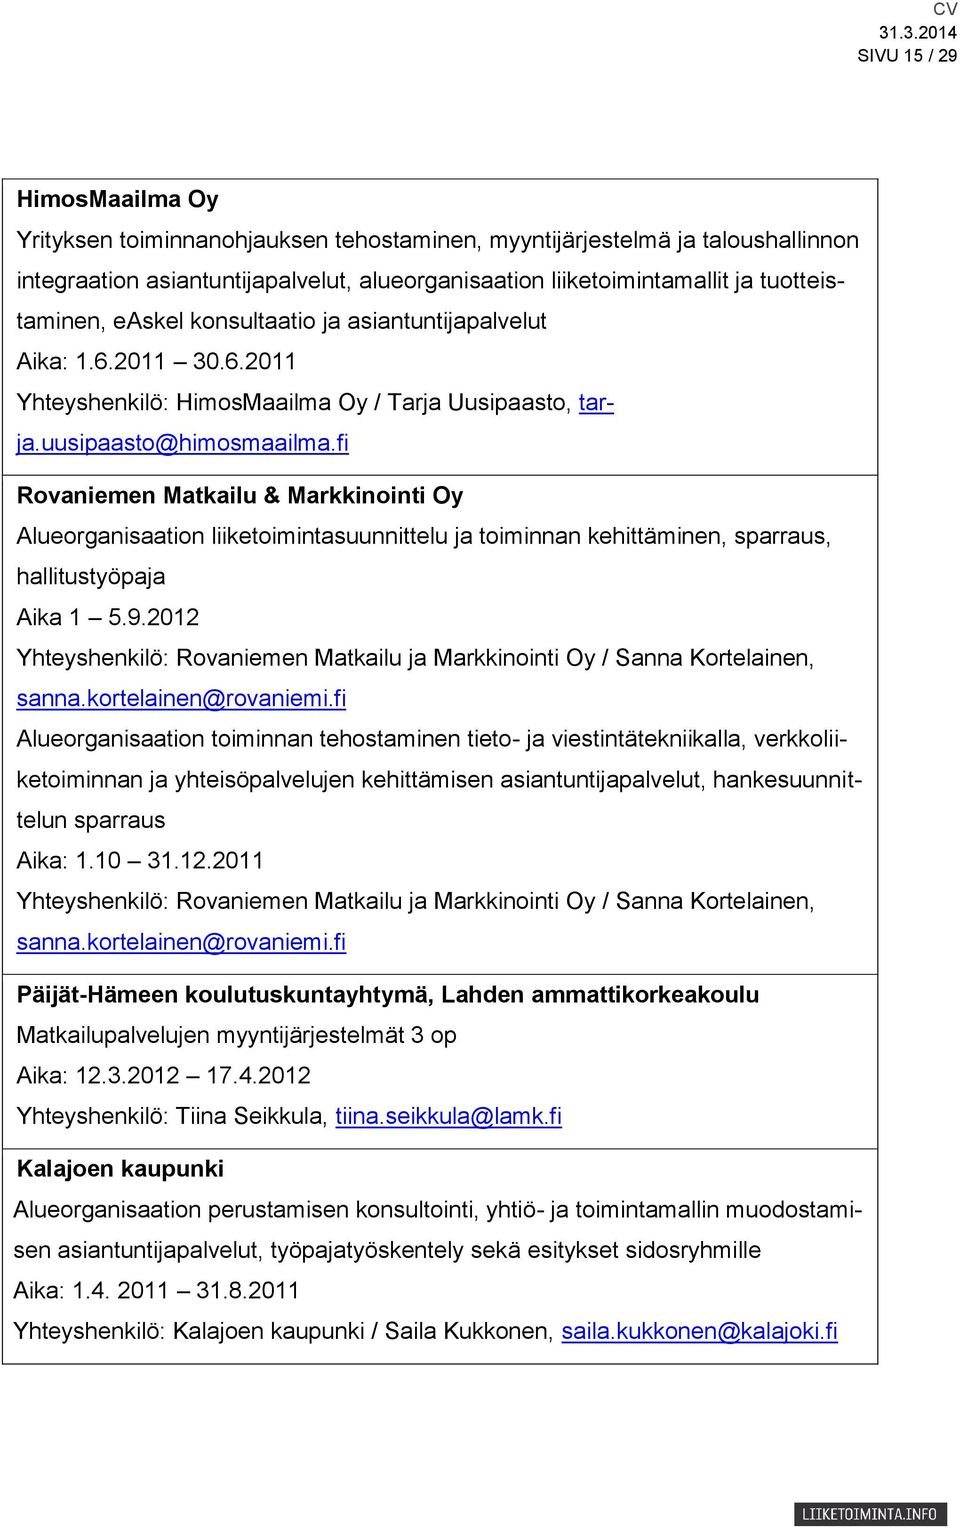 fi Rovaniemen Matkailu & Markkinointi Oy Alueorganisaation liiketoimintasuunnittelu ja toiminnan kehittäminen, sparraus, hallitustyöpaja Aika 1 5.9.